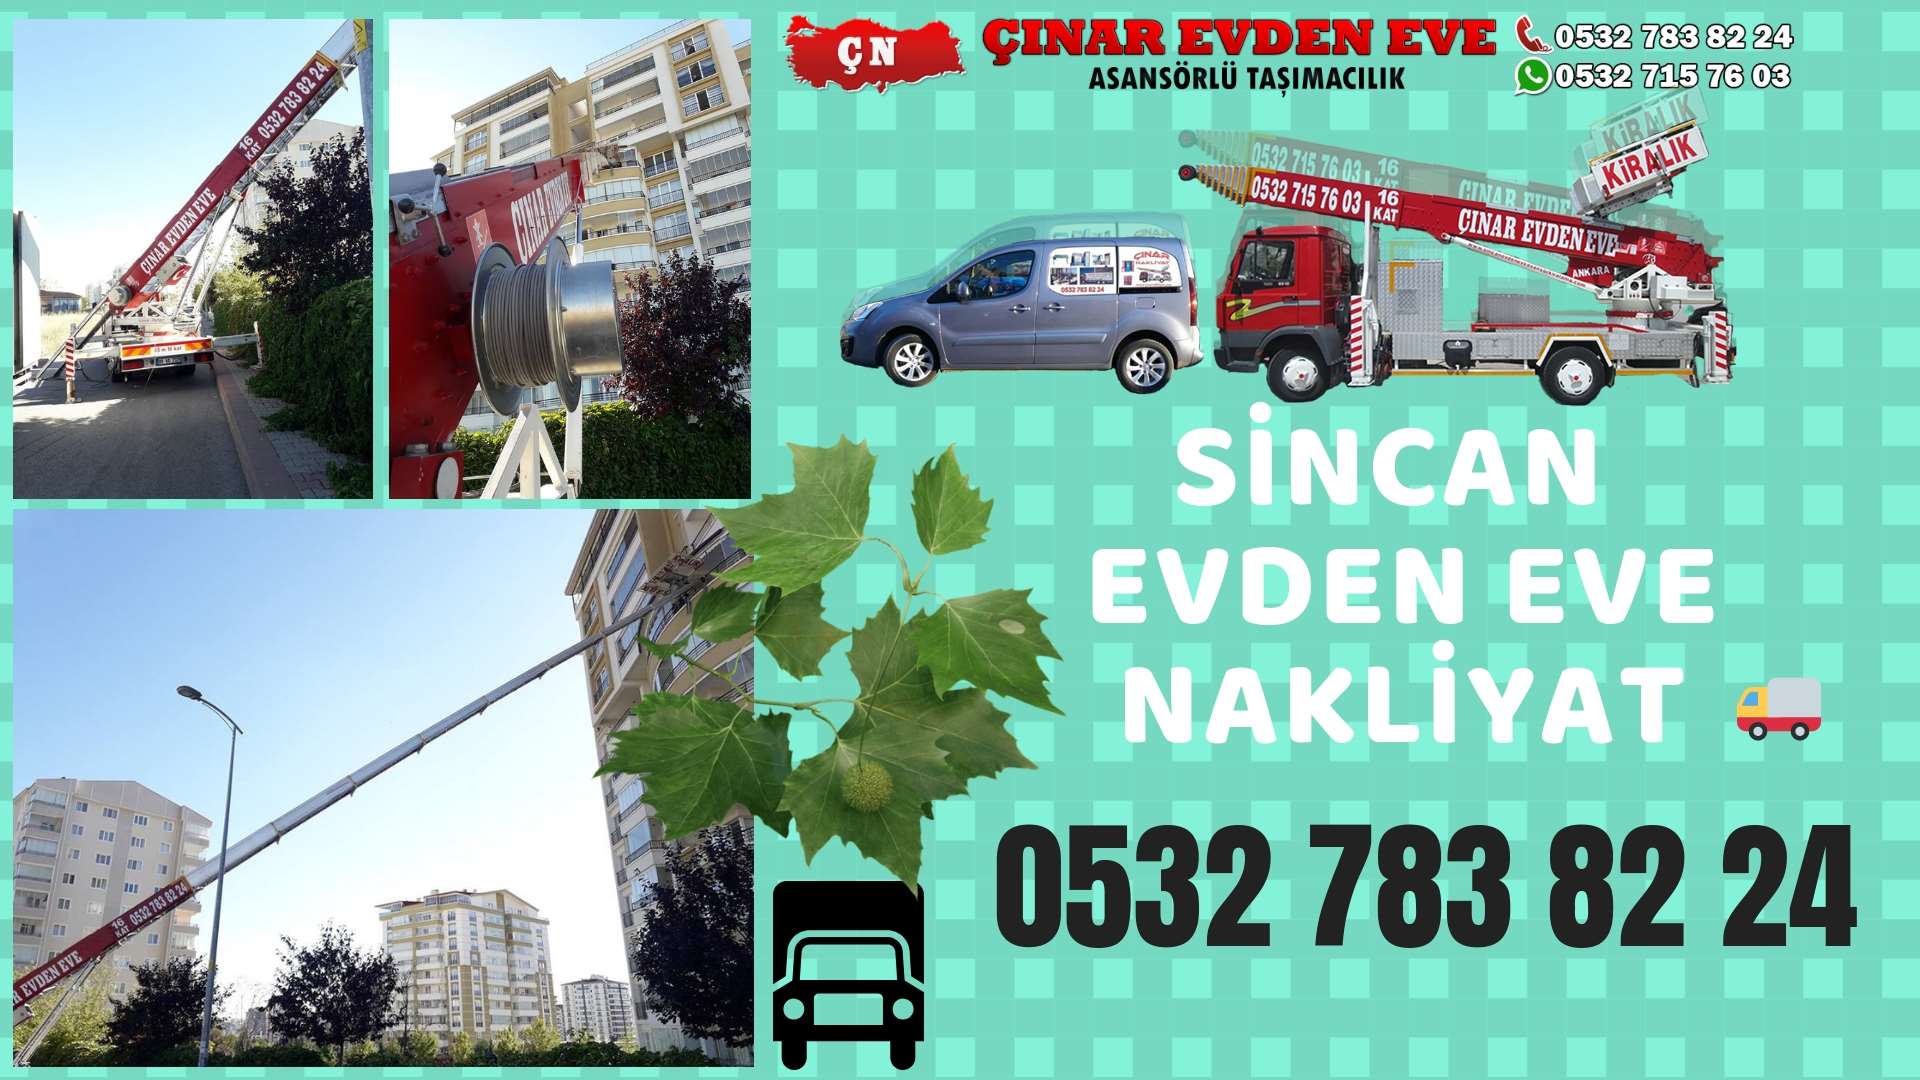 Ankara Elvankent sincan ev eşya taşımacılığı, sincan evden eve 0532 715 76 03